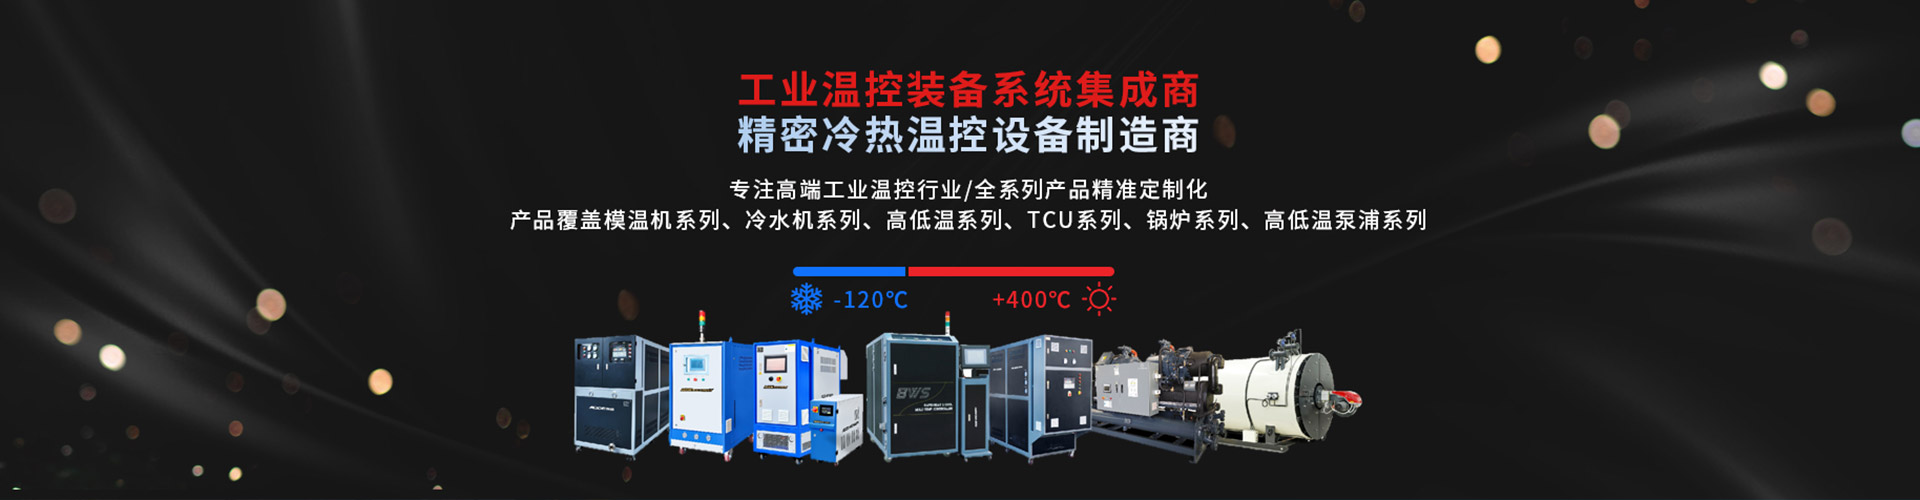 深圳市yd12300云顶线路机械有限公司 精密冷热温控社保制造商-专注高端工业温度控制